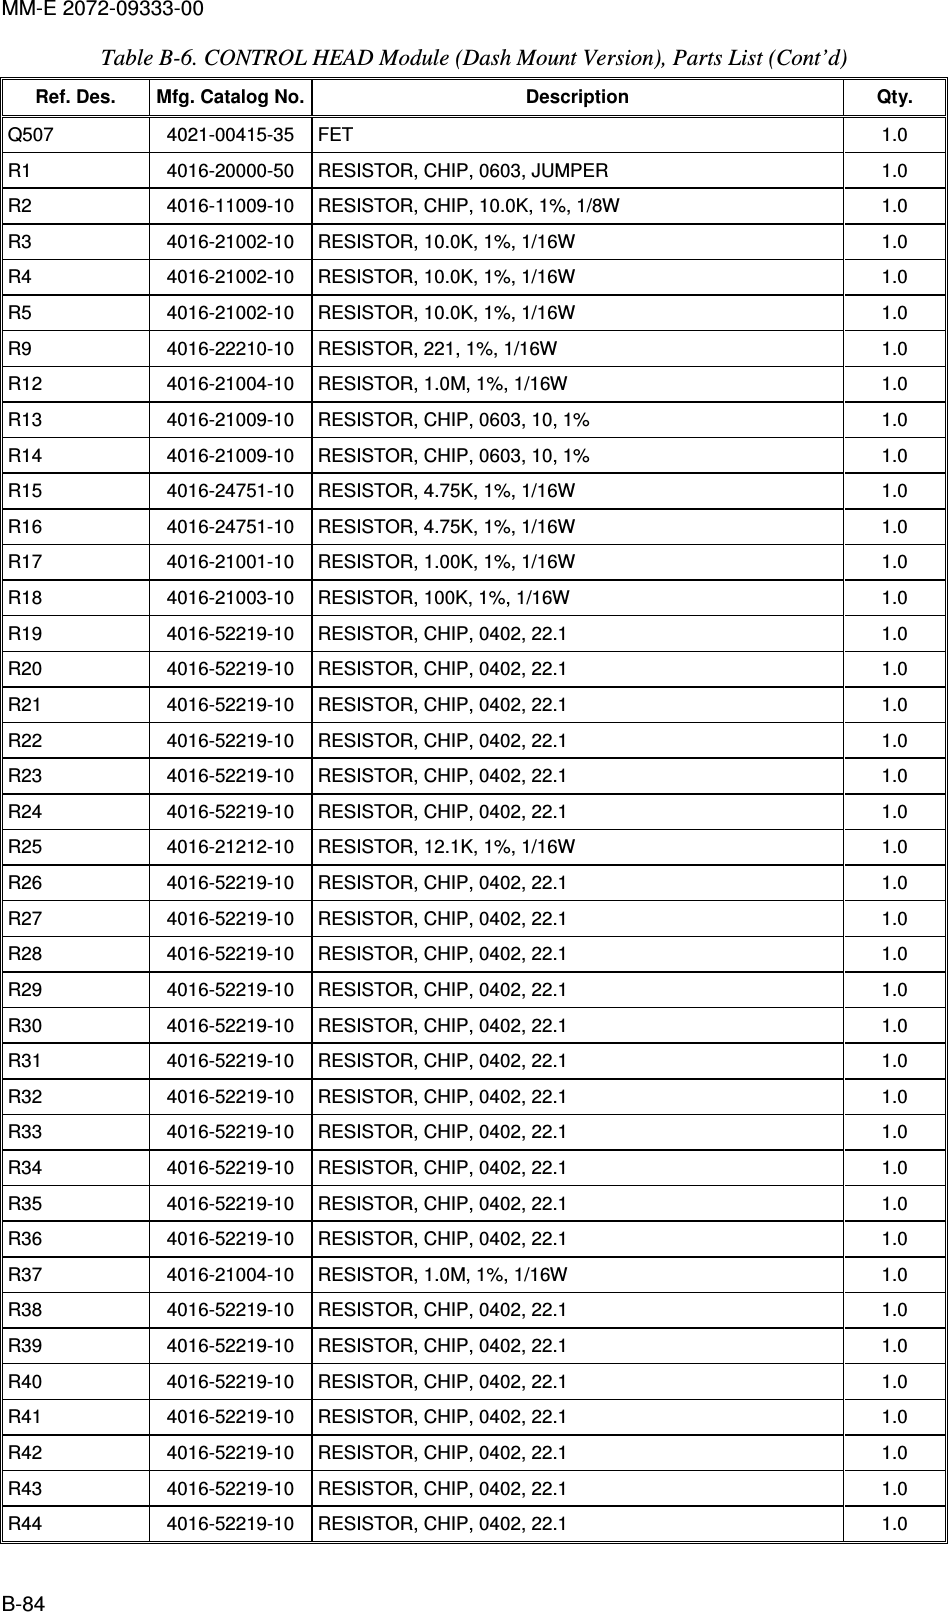 MM-E 2072-09333-00 B-84 Table  B-6. CONTROL HEAD Module (Dash Mount Version), Parts List (Cont’d)  Ref. Des.  Mfg. Catalog No. Description  Qty. Q507   4021-00415-35   FET  1.0  R1   4016-20000-50   RESISTOR, CHIP, 0603, JUMPER  1.0  R2   4016-11009-10   RESISTOR, CHIP, 10.0K, 1%, 1/8W  1.0  R3   4016-21002-10   RESISTOR, 10.0K, 1%, 1/16W  1.0  R4   4016-21002-10   RESISTOR, 10.0K, 1%, 1/16W  1.0  R5   4016-21002-10   RESISTOR, 10.0K, 1%, 1/16W  1.0  R9   4016-22210-10   RESISTOR, 221, 1%, 1/16W  1.0  R12   4016-21004-10   RESISTOR, 1.0M, 1%, 1/16W  1.0  R13   4016-21009-10   RESISTOR, CHIP, 0603, 10, 1%  1.0  R14   4016-21009-10   RESISTOR, CHIP, 0603, 10, 1%  1.0  R15   4016-24751-10   RESISTOR, 4.75K, 1%, 1/16W  1.0  R16   4016-24751-10   RESISTOR, 4.75K, 1%, 1/16W  1.0  R17   4016-21001-10   RESISTOR, 1.00K, 1%, 1/16W  1.0  R18   4016-21003-10   RESISTOR, 100K, 1%, 1/16W  1.0  R19   4016-52219-10   RESISTOR, CHIP, 0402, 22.1  1.0  R20   4016-52219-10   RESISTOR, CHIP, 0402, 22.1  1.0  R21   4016-52219-10   RESISTOR, CHIP, 0402, 22.1  1.0  R22   4016-52219-10   RESISTOR, CHIP, 0402, 22.1  1.0  R23   4016-52219-10   RESISTOR, CHIP, 0402, 22.1  1.0  R24   4016-52219-10   RESISTOR, CHIP, 0402, 22.1  1.0  R25   4016-21212-10   RESISTOR, 12.1K, 1%, 1/16W  1.0  R26   4016-52219-10   RESISTOR, CHIP, 0402, 22.1  1.0  R27   4016-52219-10   RESISTOR, CHIP, 0402, 22.1  1.0  R28   4016-52219-10   RESISTOR, CHIP, 0402, 22.1  1.0  R29   4016-52219-10   RESISTOR, CHIP, 0402, 22.1  1.0  R30   4016-52219-10   RESISTOR, CHIP, 0402, 22.1  1.0  R31   4016-52219-10   RESISTOR, CHIP, 0402, 22.1  1.0  R32   4016-52219-10   RESISTOR, CHIP, 0402, 22.1  1.0  R33   4016-52219-10   RESISTOR, CHIP, 0402, 22.1  1.0  R34   4016-52219-10   RESISTOR, CHIP, 0402, 22.1  1.0  R35   4016-52219-10   RESISTOR, CHIP, 0402, 22.1  1.0  R36   4016-52219-10   RESISTOR, CHIP, 0402, 22.1  1.0  R37   4016-21004-10   RESISTOR, 1.0M, 1%, 1/16W  1.0  R38   4016-52219-10   RESISTOR, CHIP, 0402, 22.1  1.0  R39   4016-52219-10   RESISTOR, CHIP, 0402, 22.1  1.0  R40   4016-52219-10   RESISTOR, CHIP, 0402, 22.1  1.0  R41   4016-52219-10   RESISTOR, CHIP, 0402, 22.1  1.0  R42   4016-52219-10   RESISTOR, CHIP, 0402, 22.1  1.0  R43   4016-52219-10   RESISTOR, CHIP, 0402, 22.1  1.0  R44   4016-52219-10   RESISTOR, CHIP, 0402, 22.1  1.0  